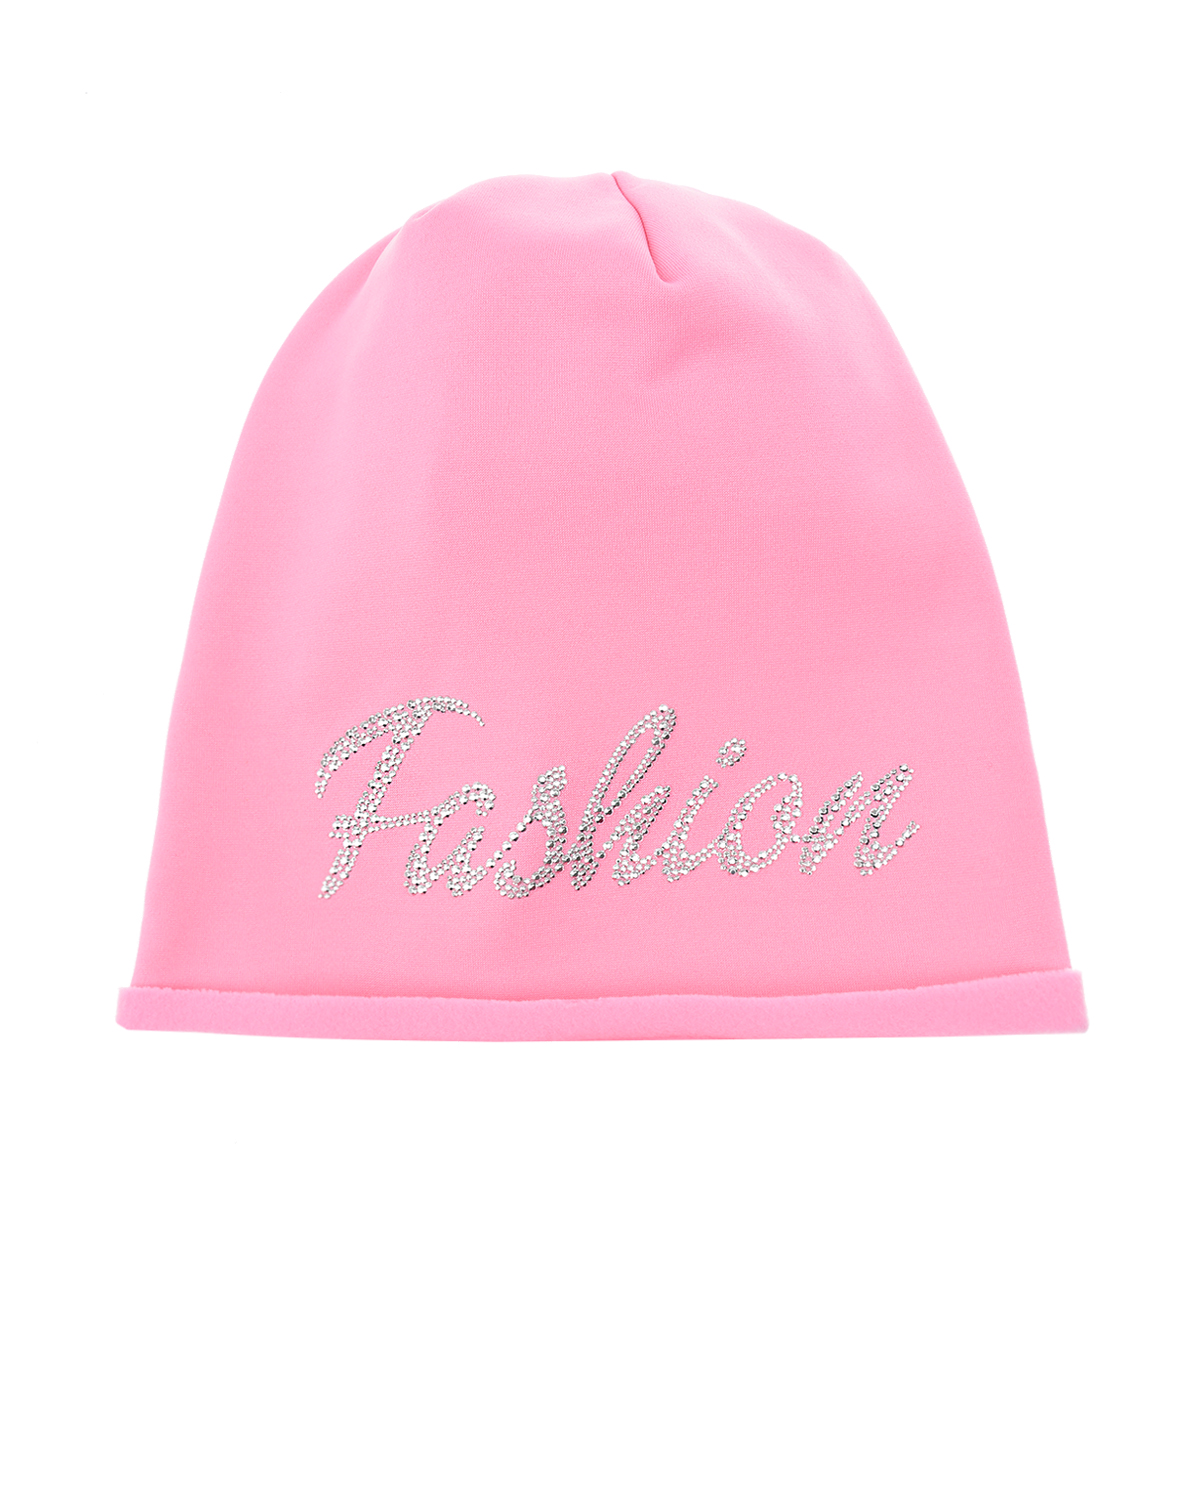 Розовая шапка из трикотажа с надписью из стразов "Fashion" Catya детская - фото 1